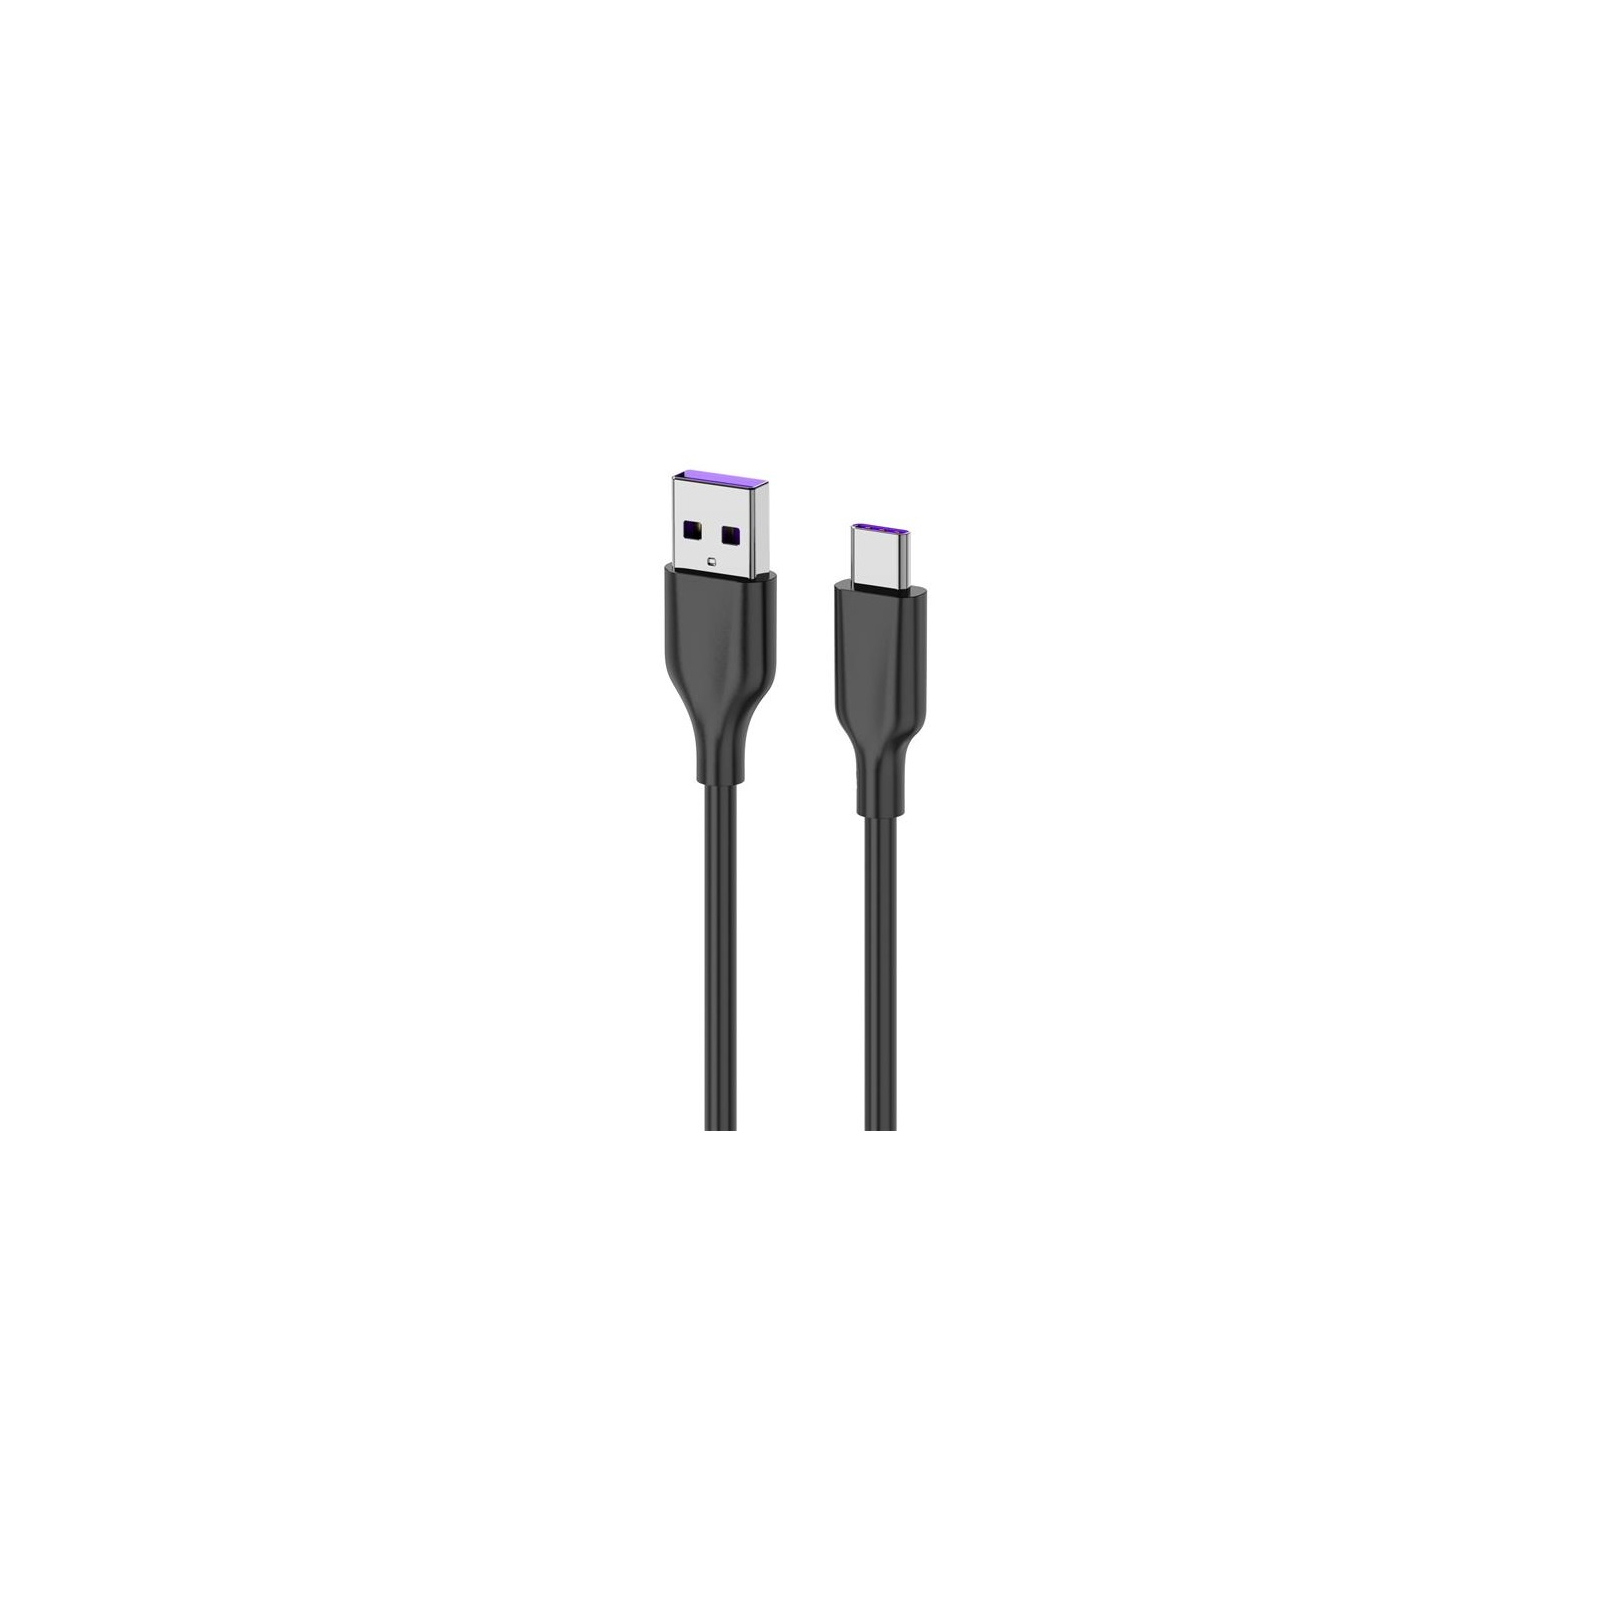 Дата кабель USB 2.0 AM to Type-C 1.0m Glow black 2E (2E-CCAC-BL)